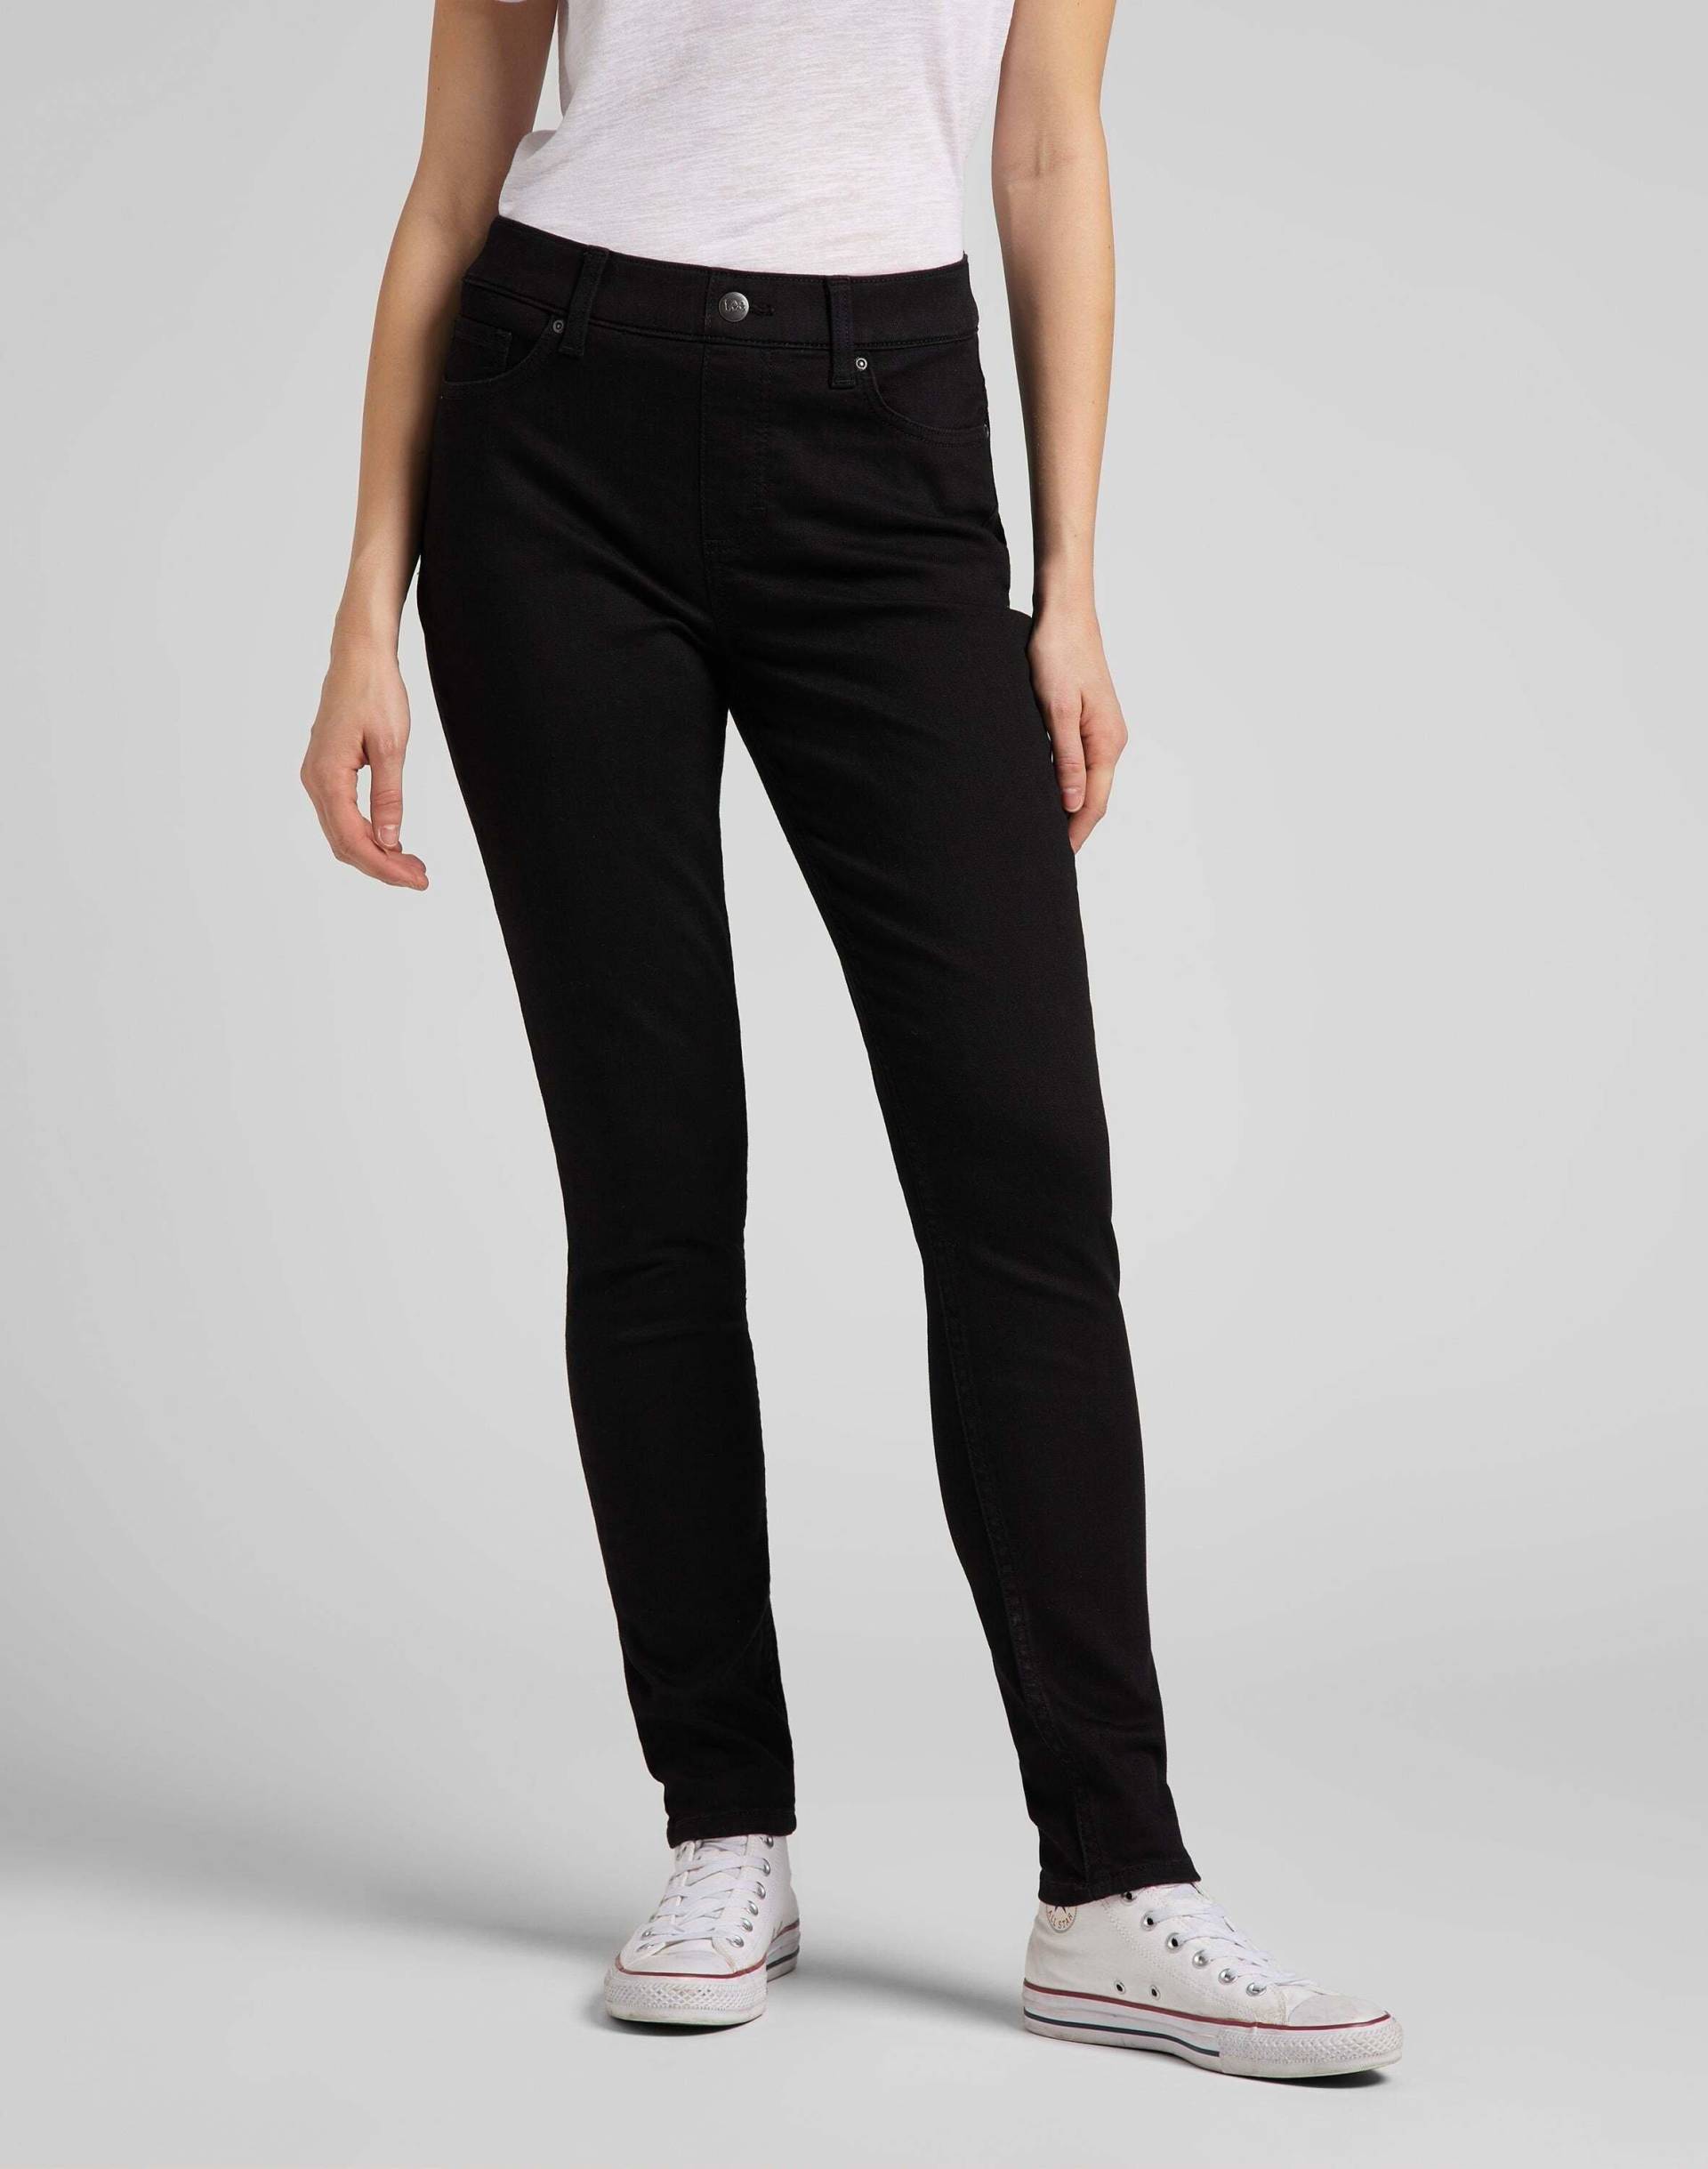 Jeans Skinny Fit Comfort Damen Schwarz L33/W27 von Lee